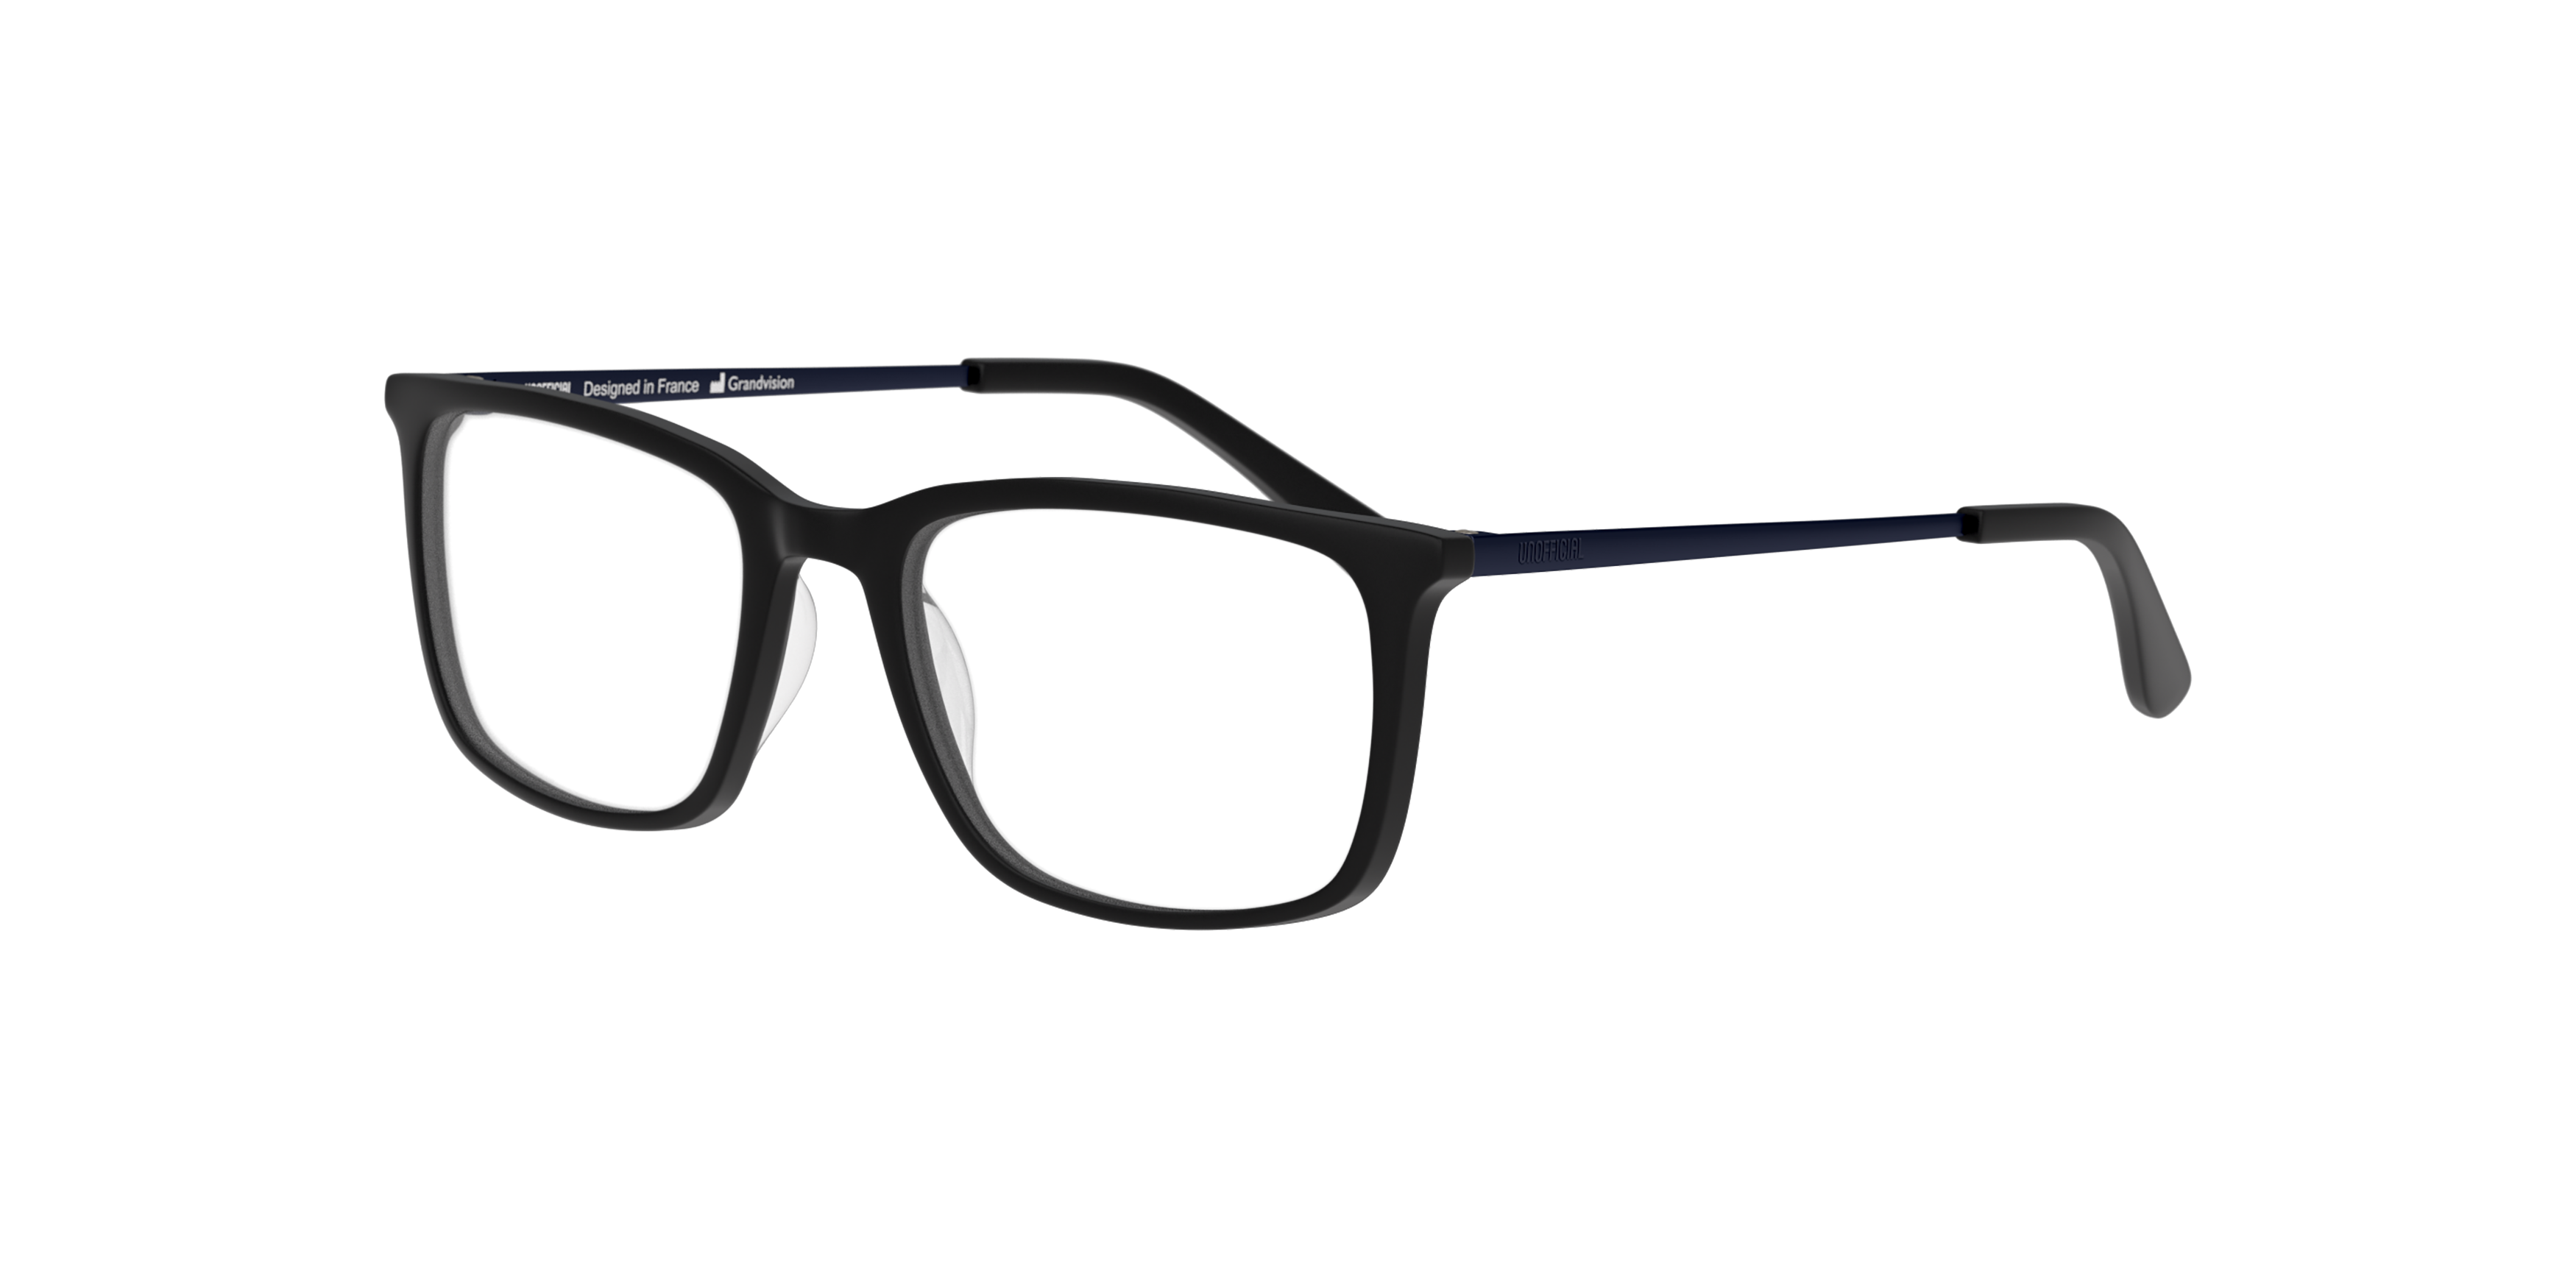 Angle_Left01 Unofficial UN OT0161 Children's Glasses Transparent / Black